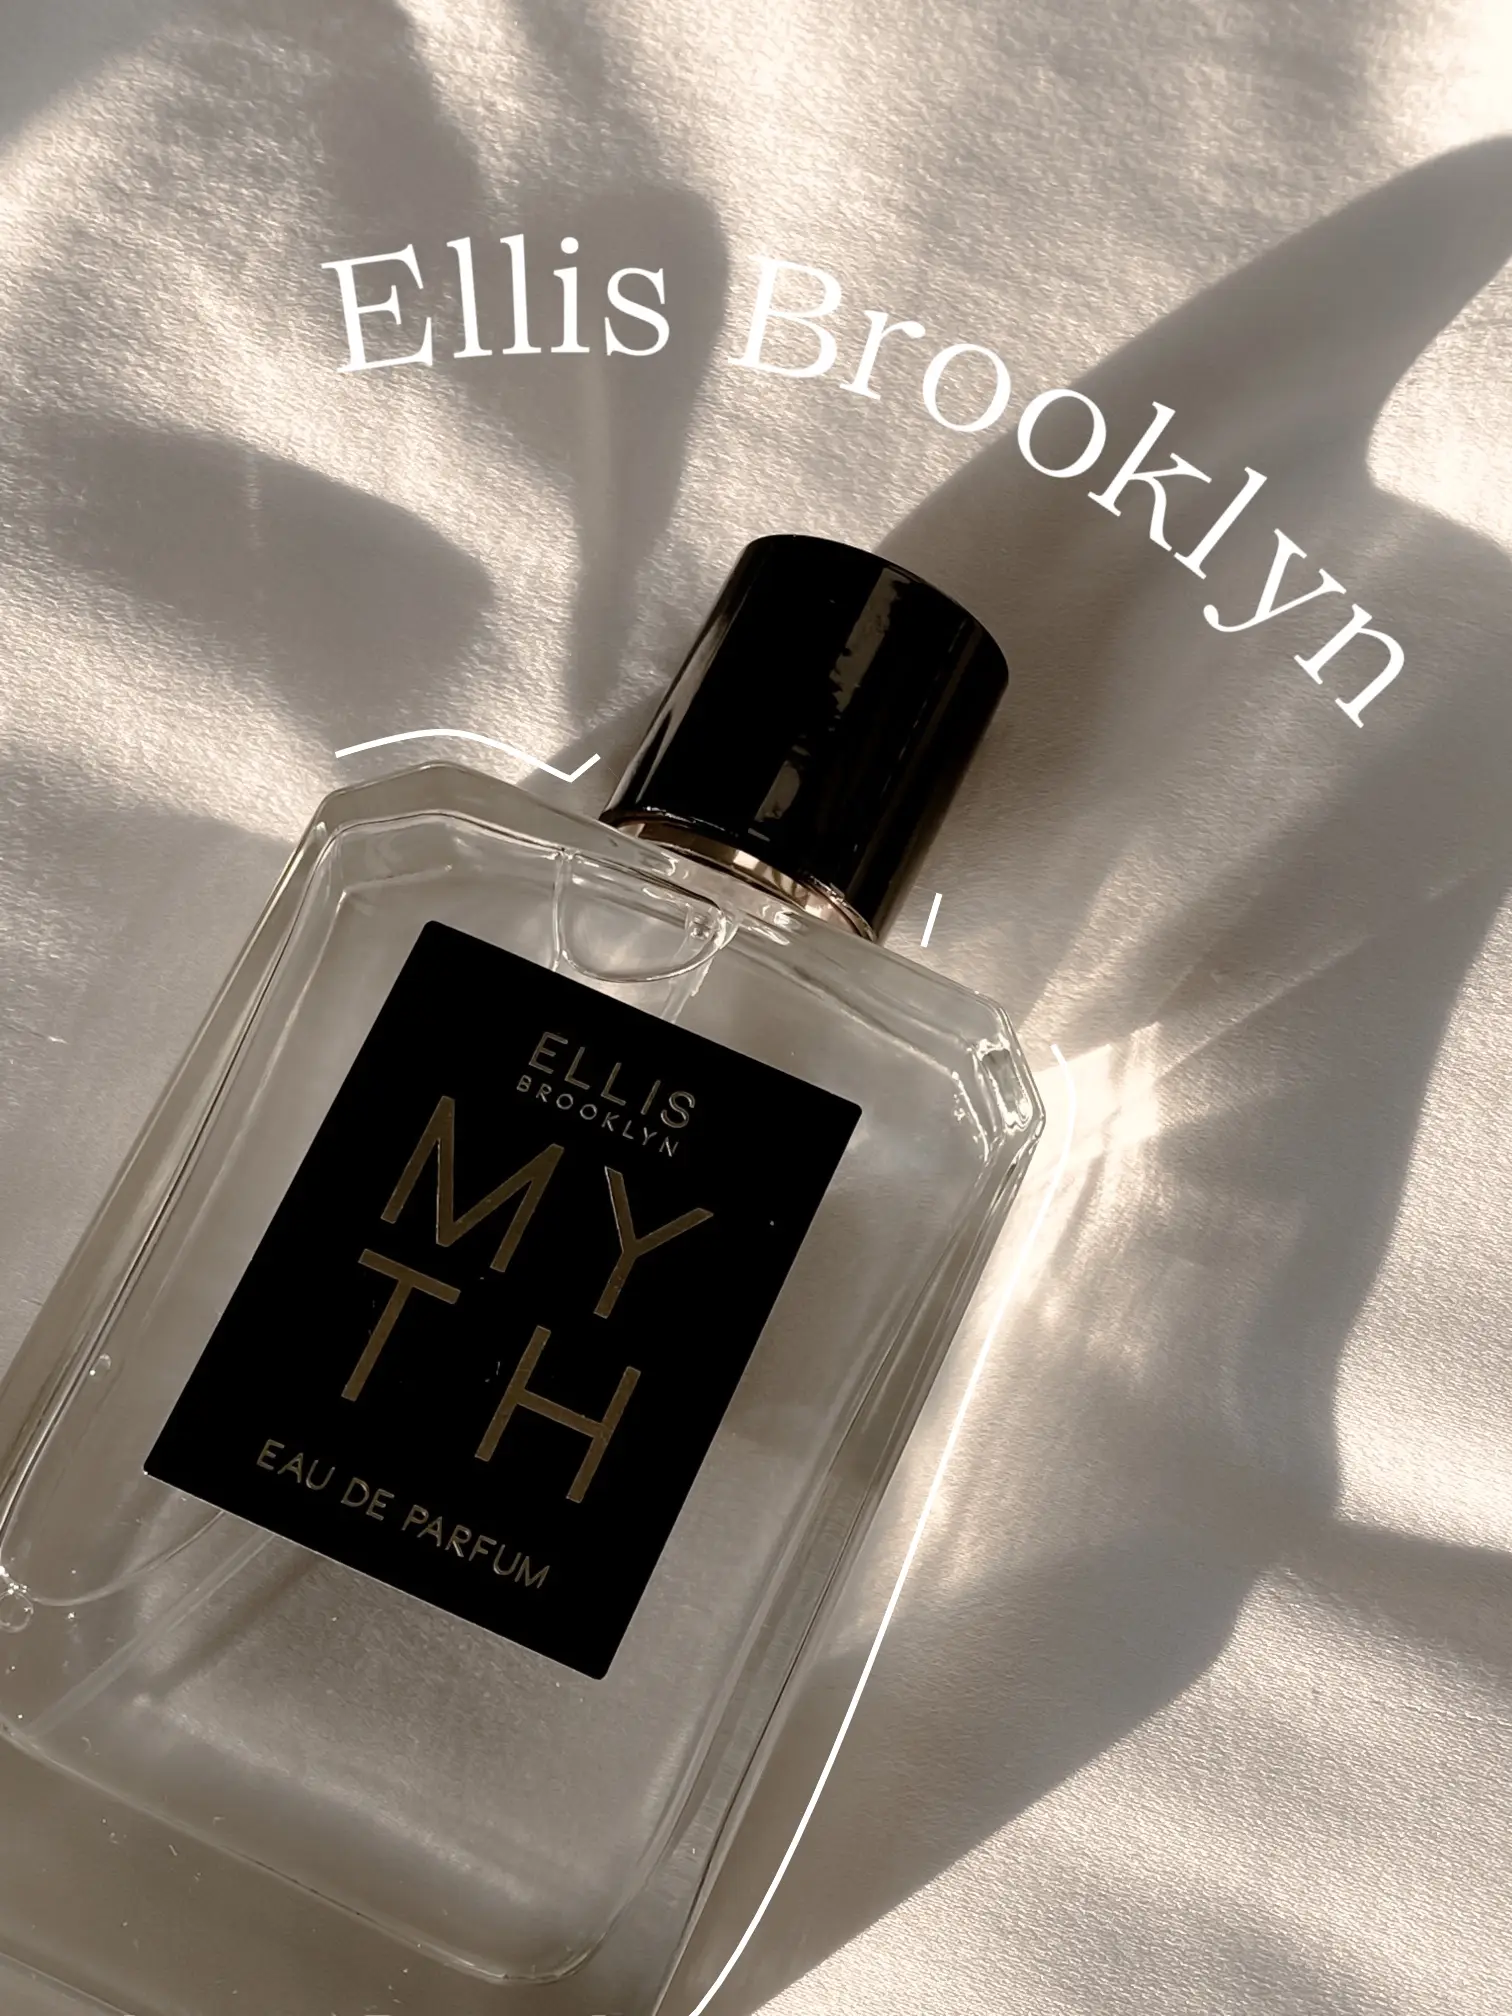 Best Ellis Brooklyn Perfumes: Top-Ranked Ellis Brooklyn Scents